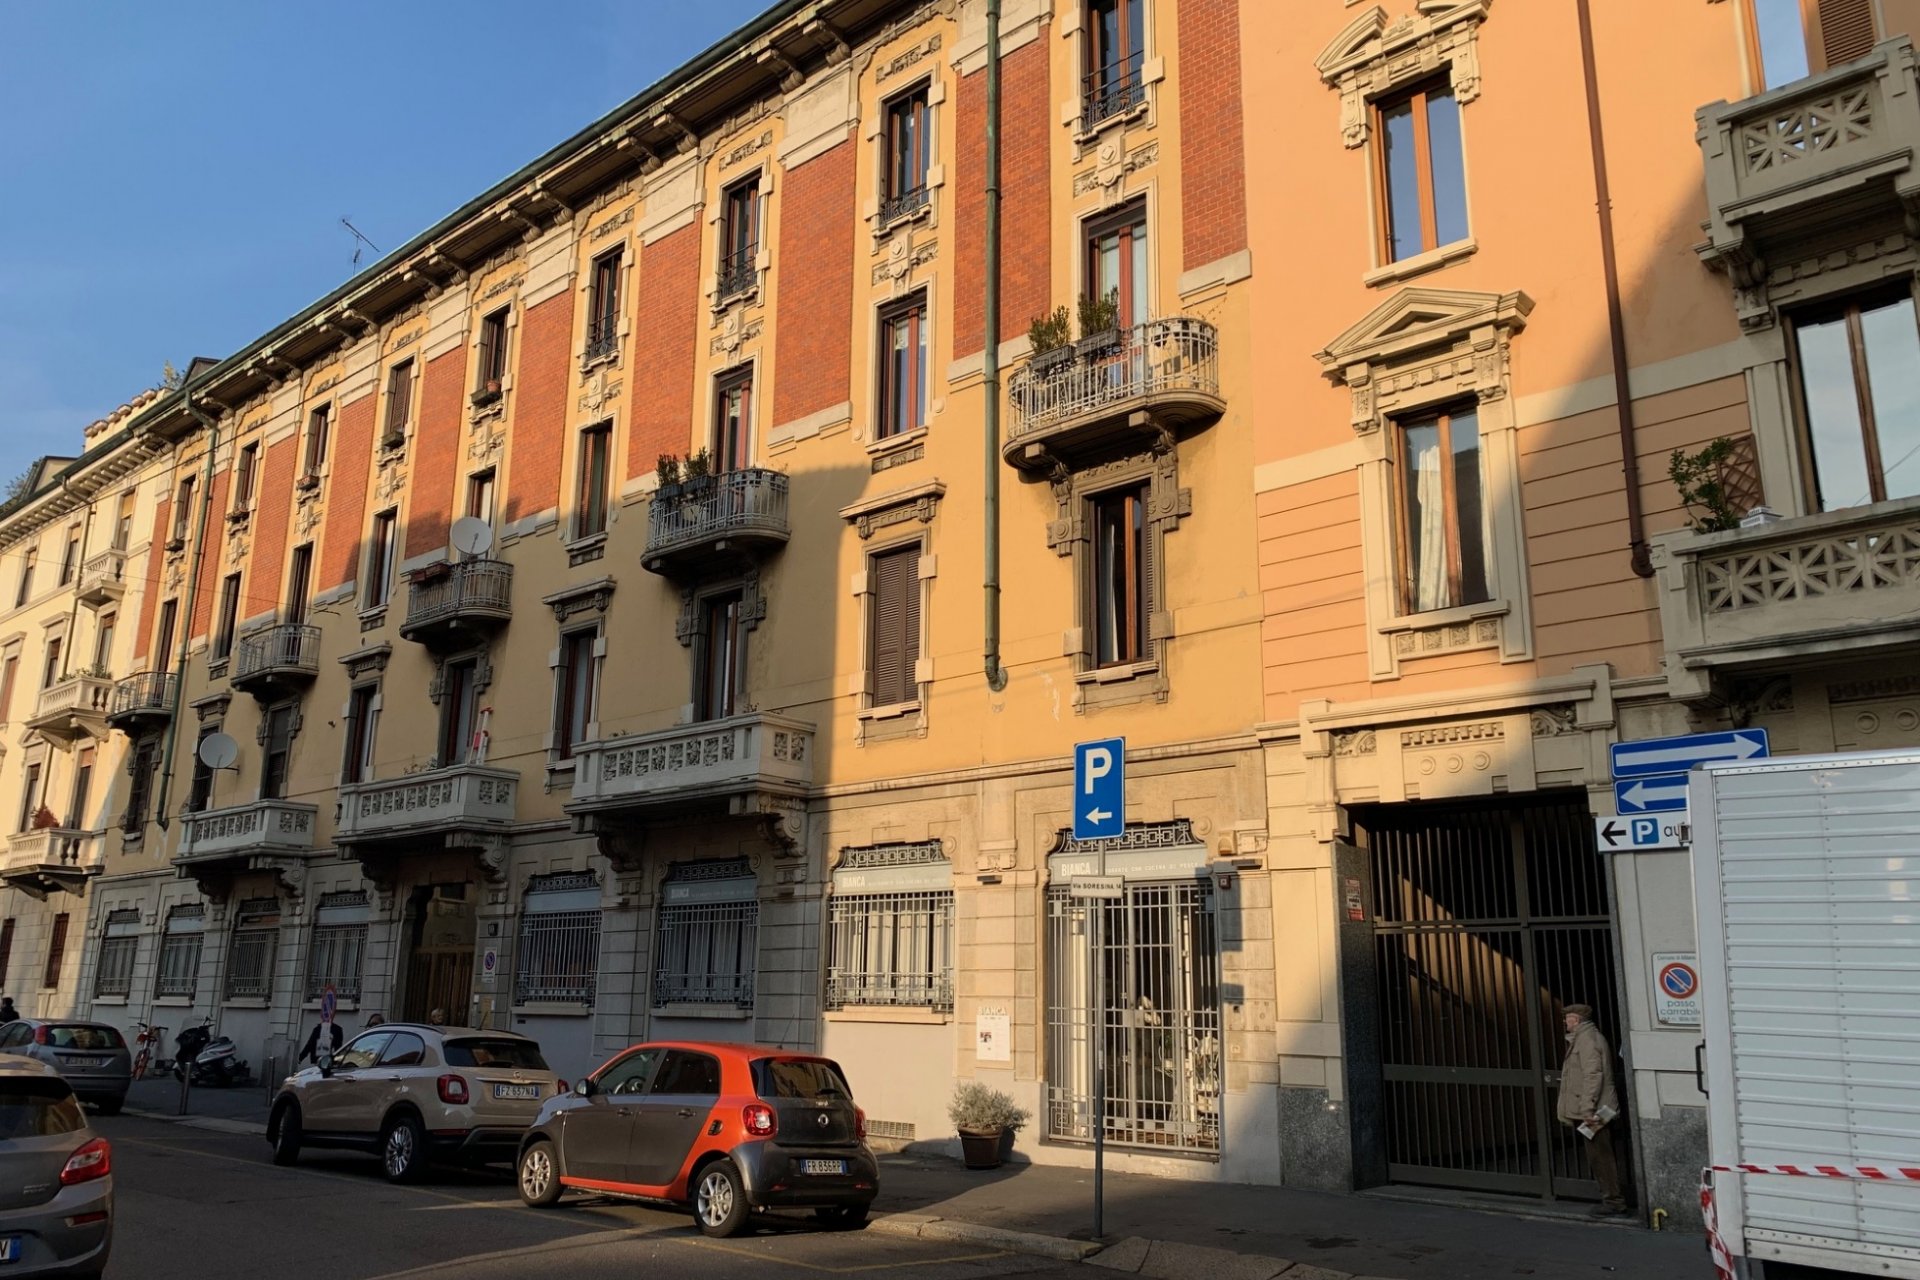 Affitto Apartment Milano - APARTMENT FOR RENT - PAGANO / CONCILIAZIONE Locality Vercelli - Piemonte - Washington